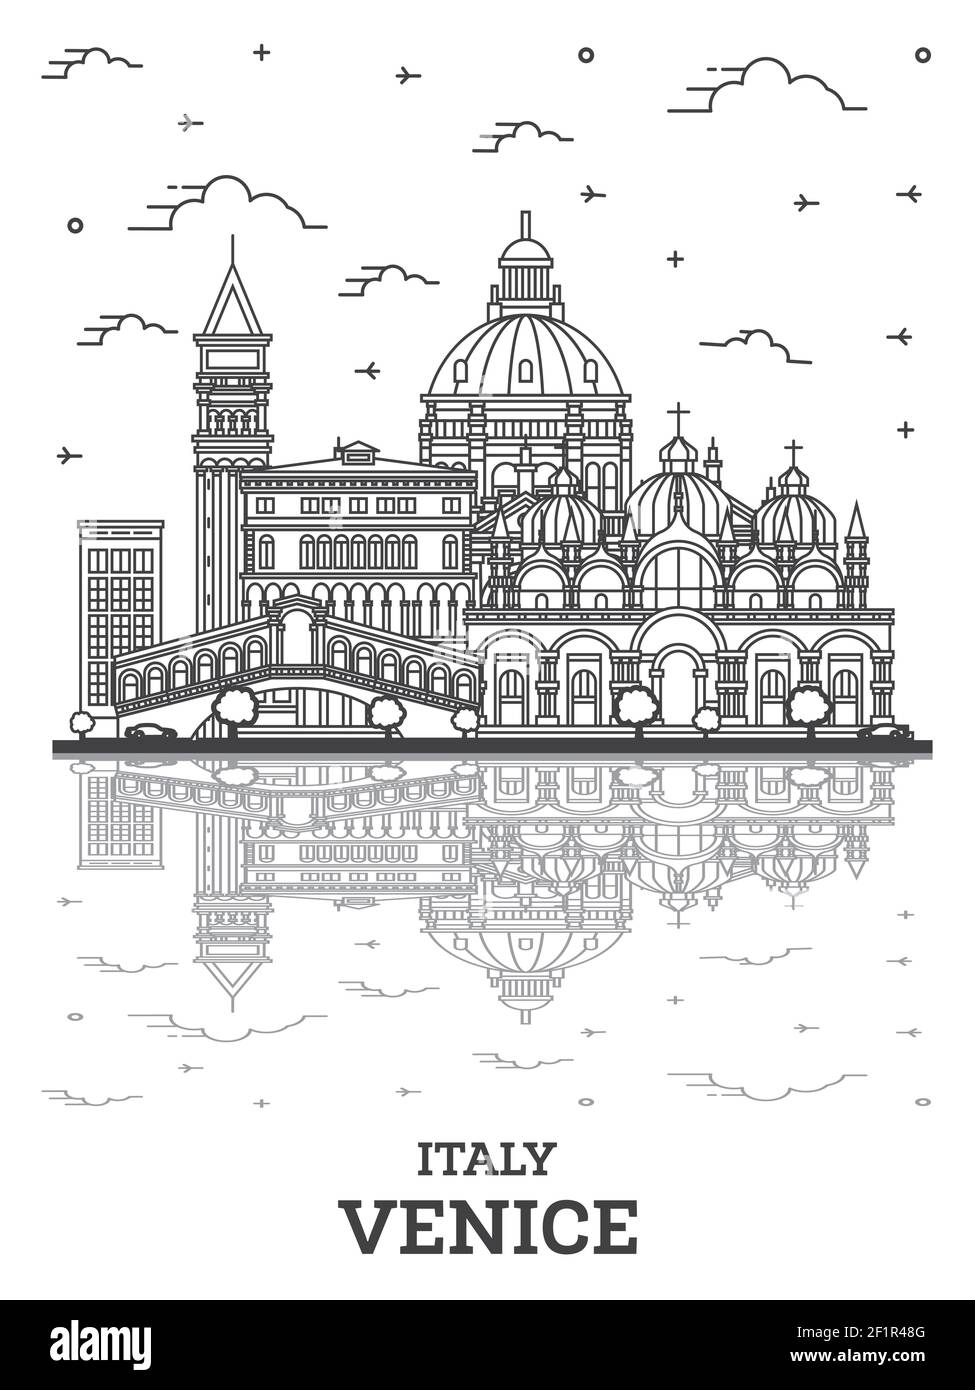 Skizzieren Sie Venedig Italien City Skyline mit historischen Gebäuden und Reflektionen isoliert auf Weiß. Vektorgrafik. Stadtbild von Venedig mit Wahrzeichen. Stock Vektor